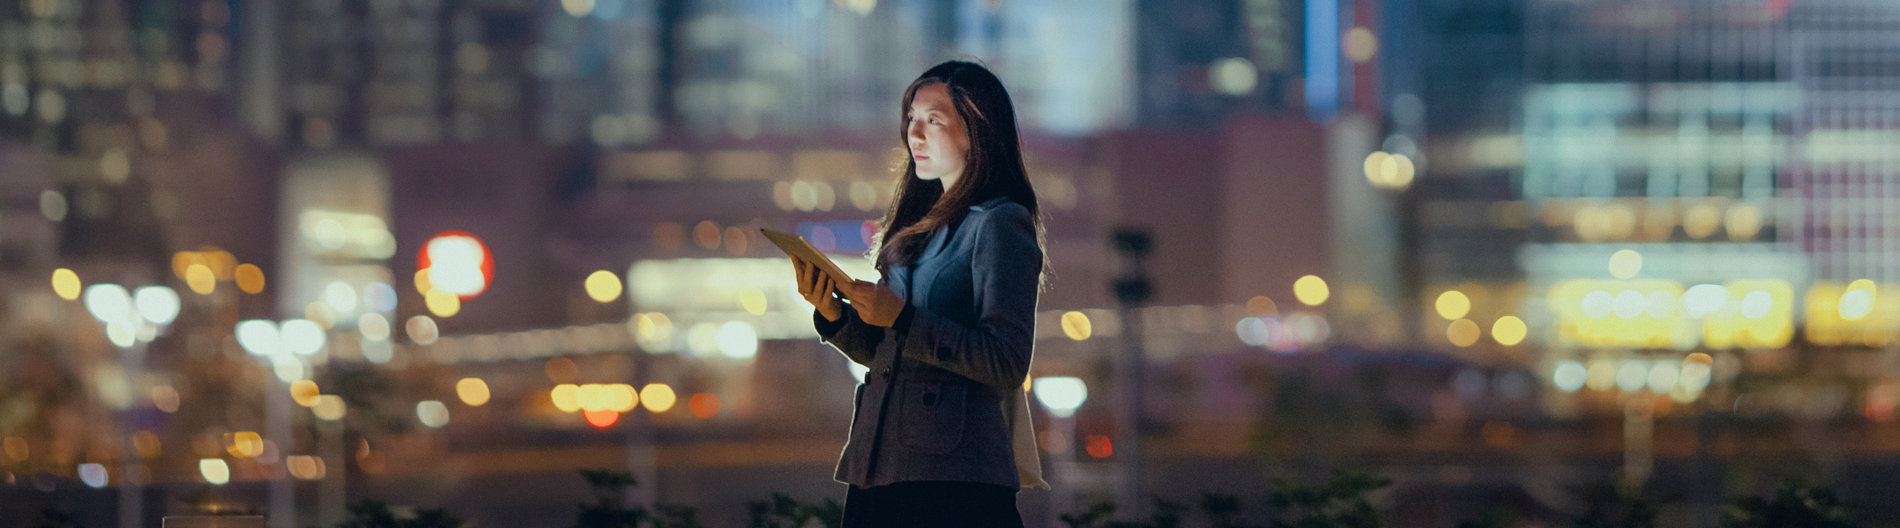 Une jeune femme d’affaires utilise une tablette numérique dans un quartier financier, devant des gratte- ciel illuminés dans la nuit.